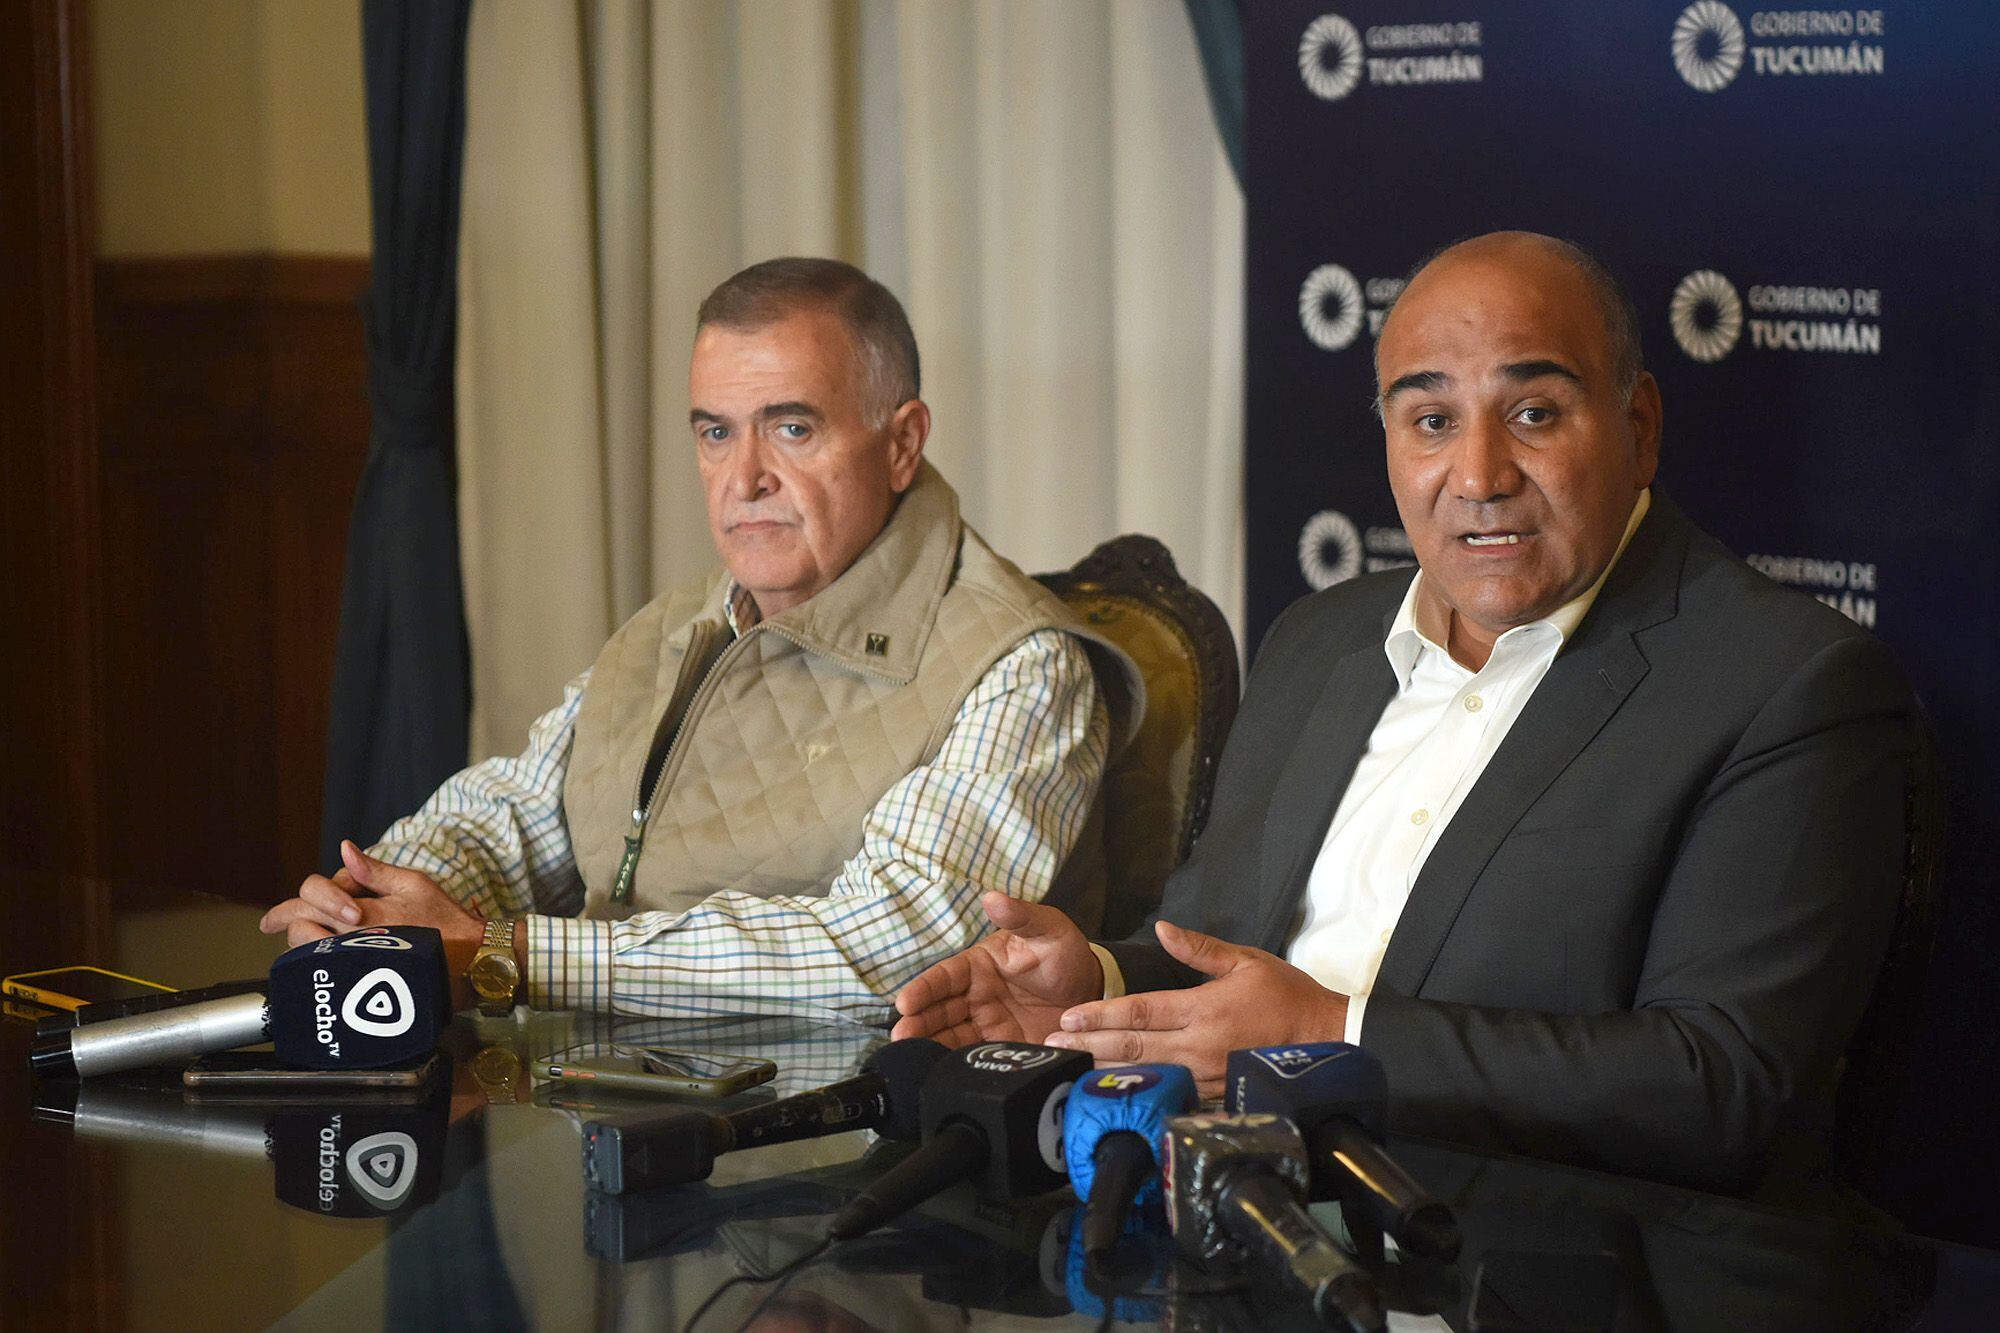 Tucumán: Juan Manzur convocó a elecciones para el 11 de junio